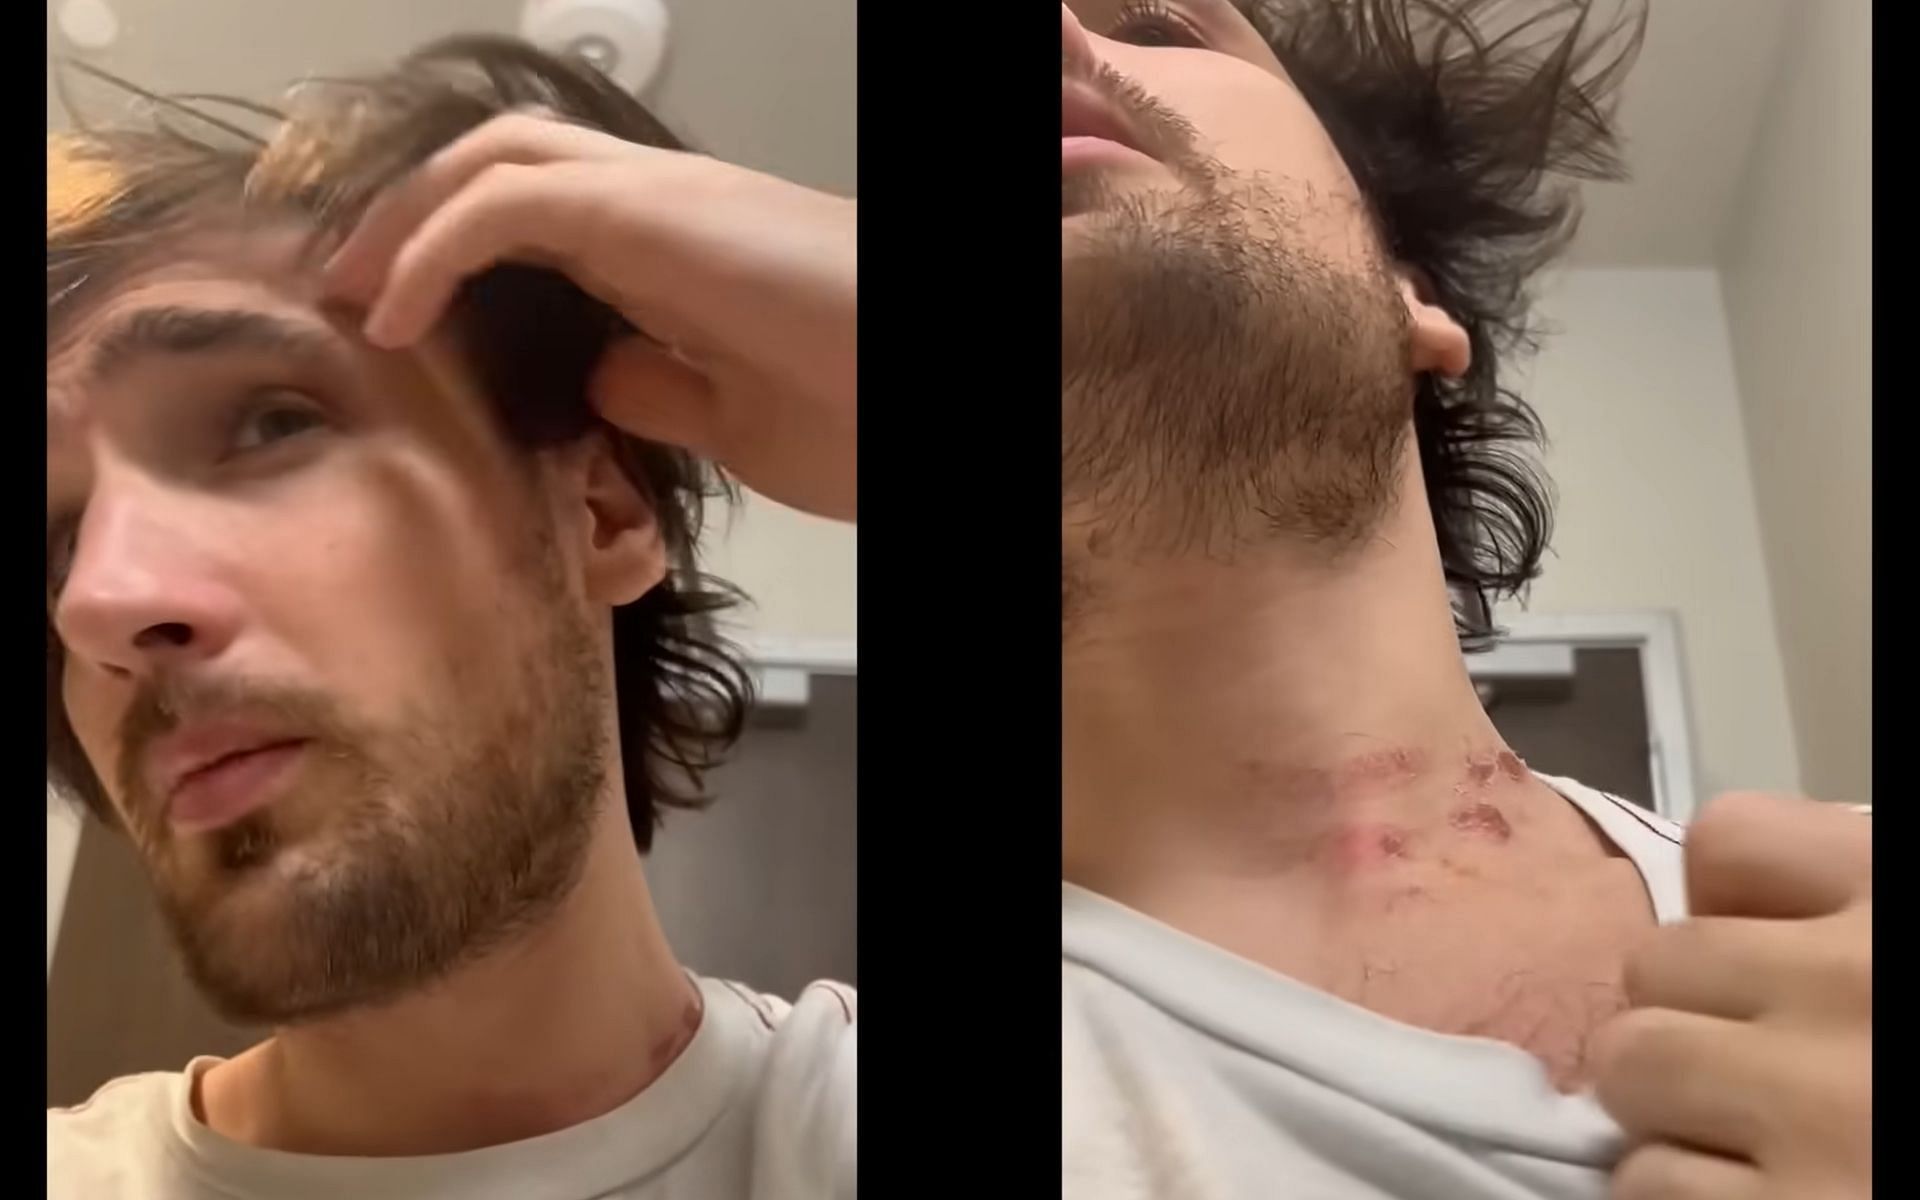 Mitch Jones displays bruises on his body (Image via Mitch Jones/YouTube)